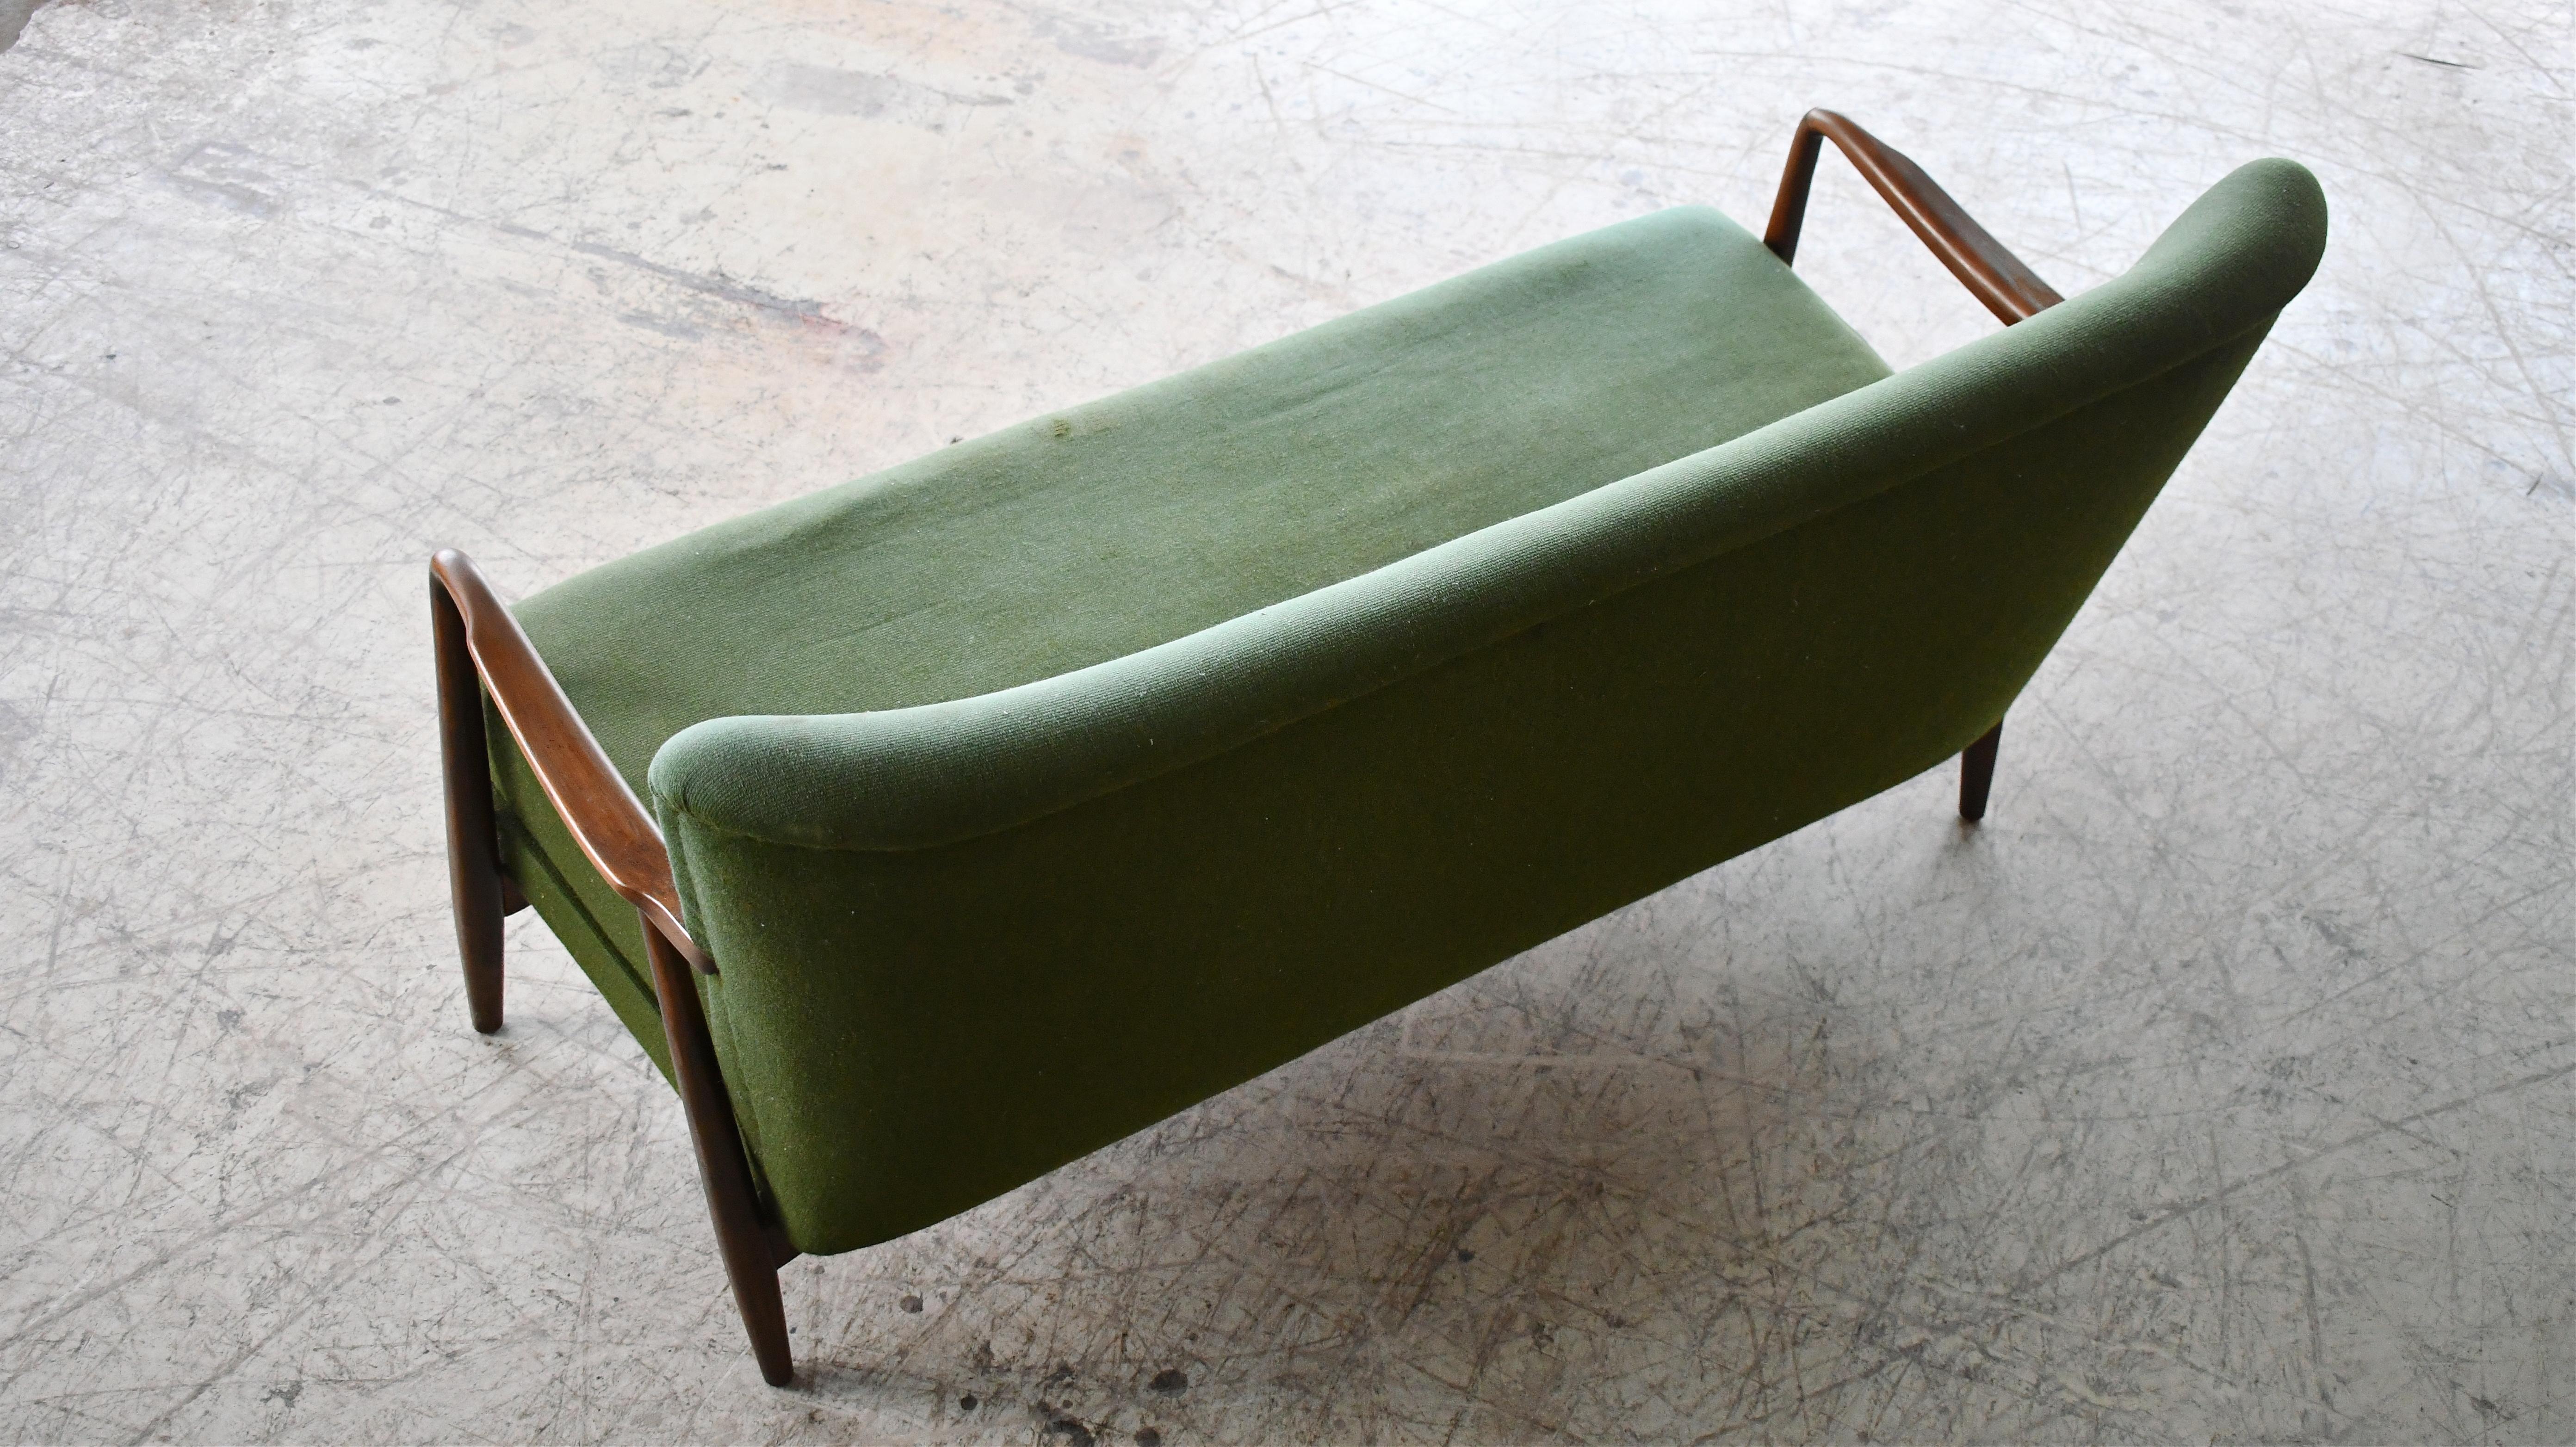 1940s sofa styles